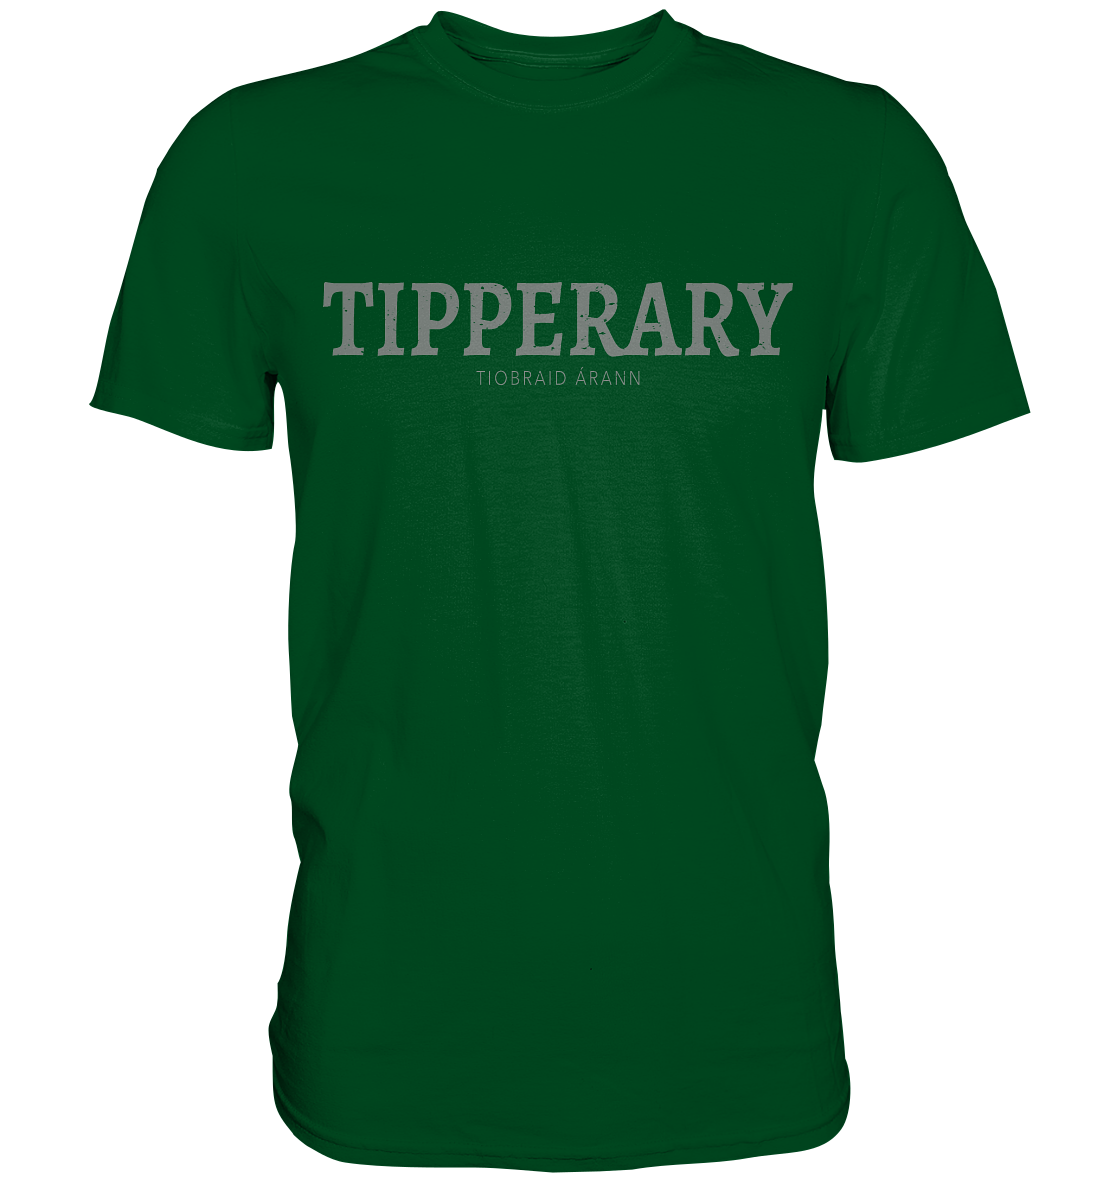 Cities Of Ireland "Tipperary" - Premium Shirt